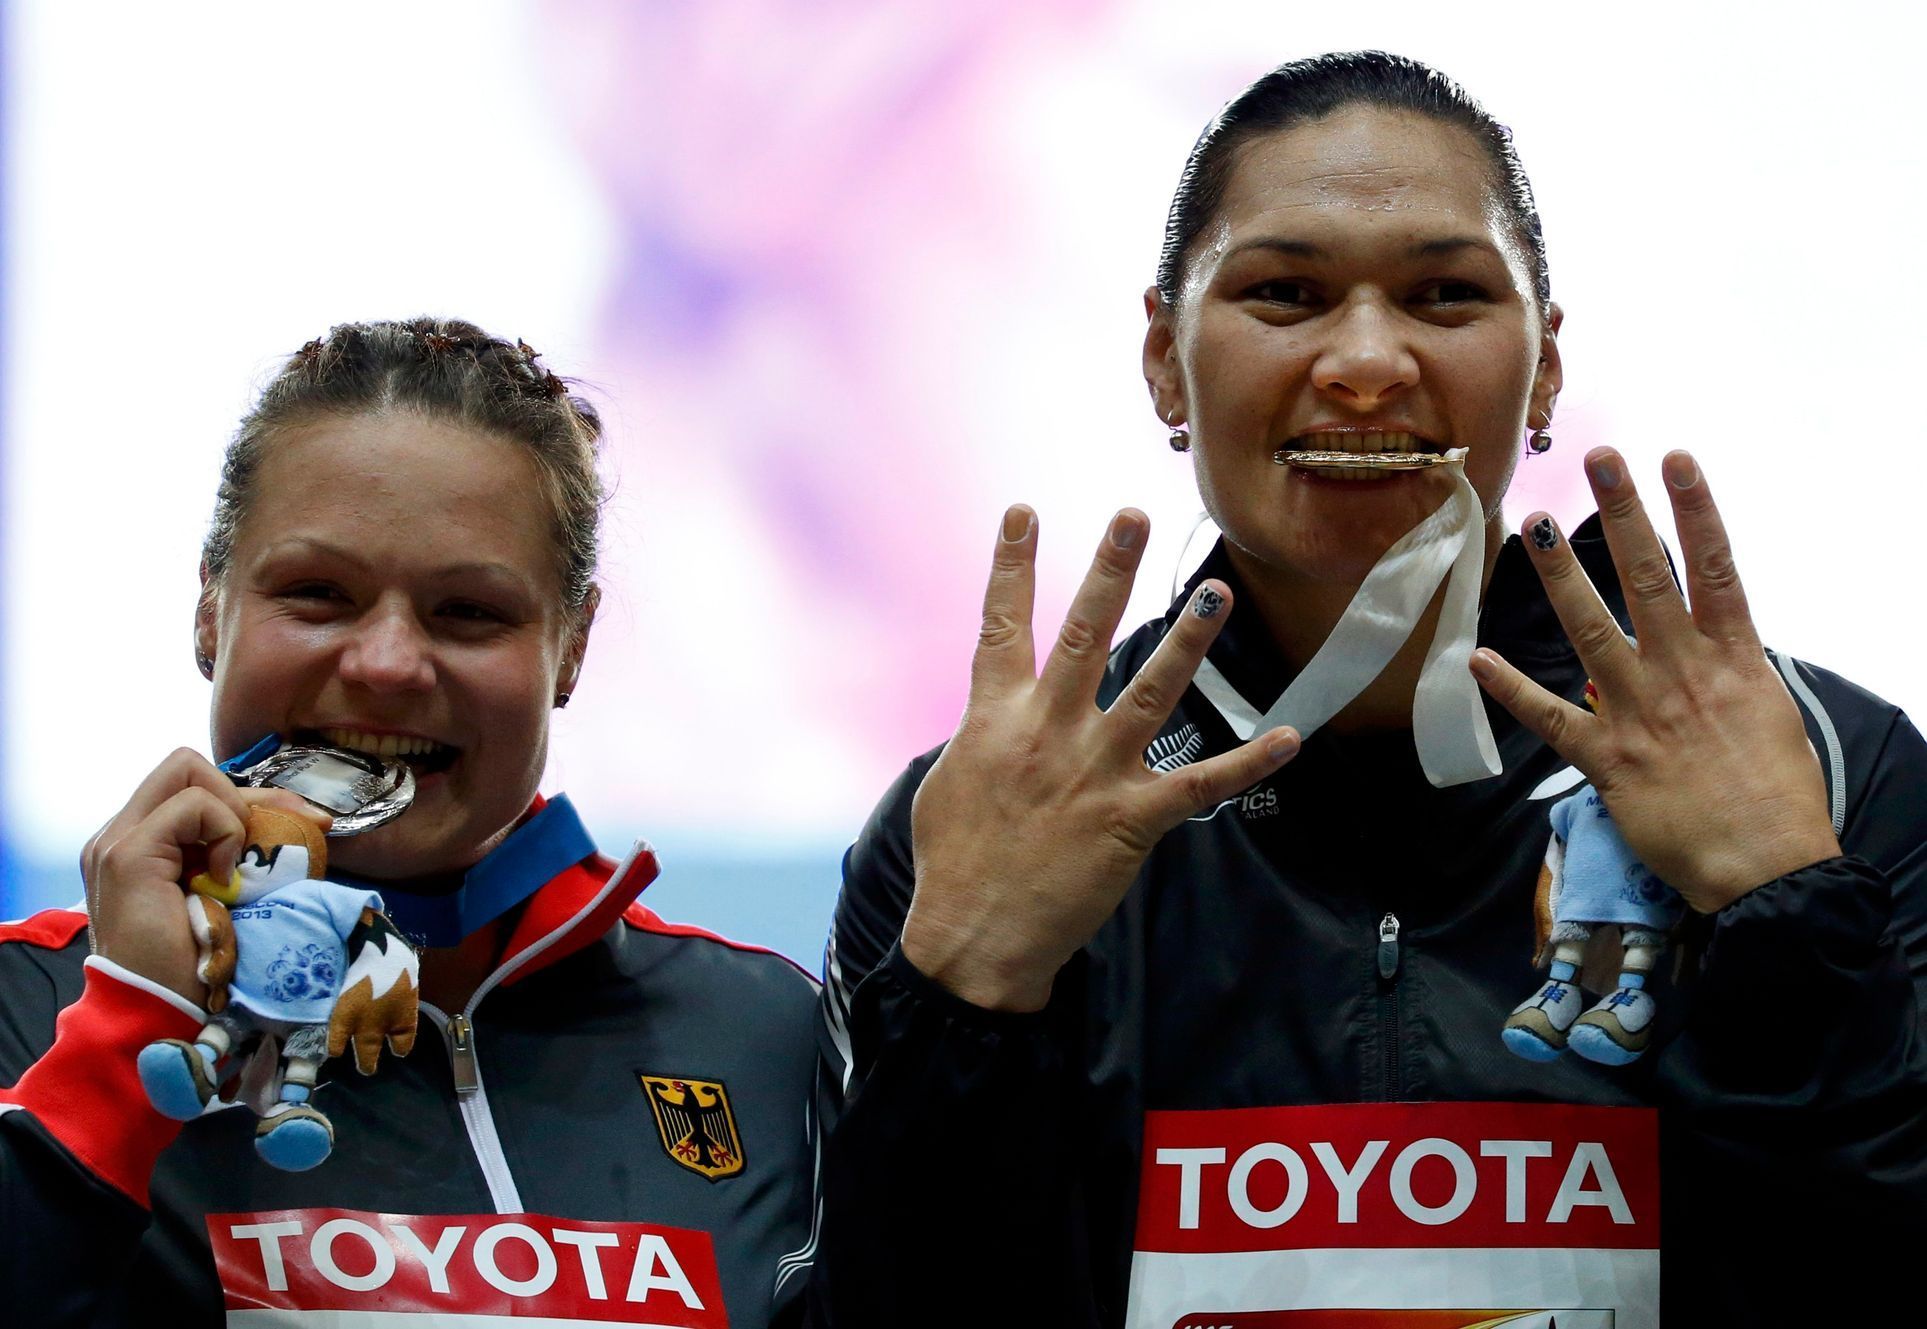 Schwanitzová a Adamsová se radují z medailí ve vrhu koulí na MS 2013